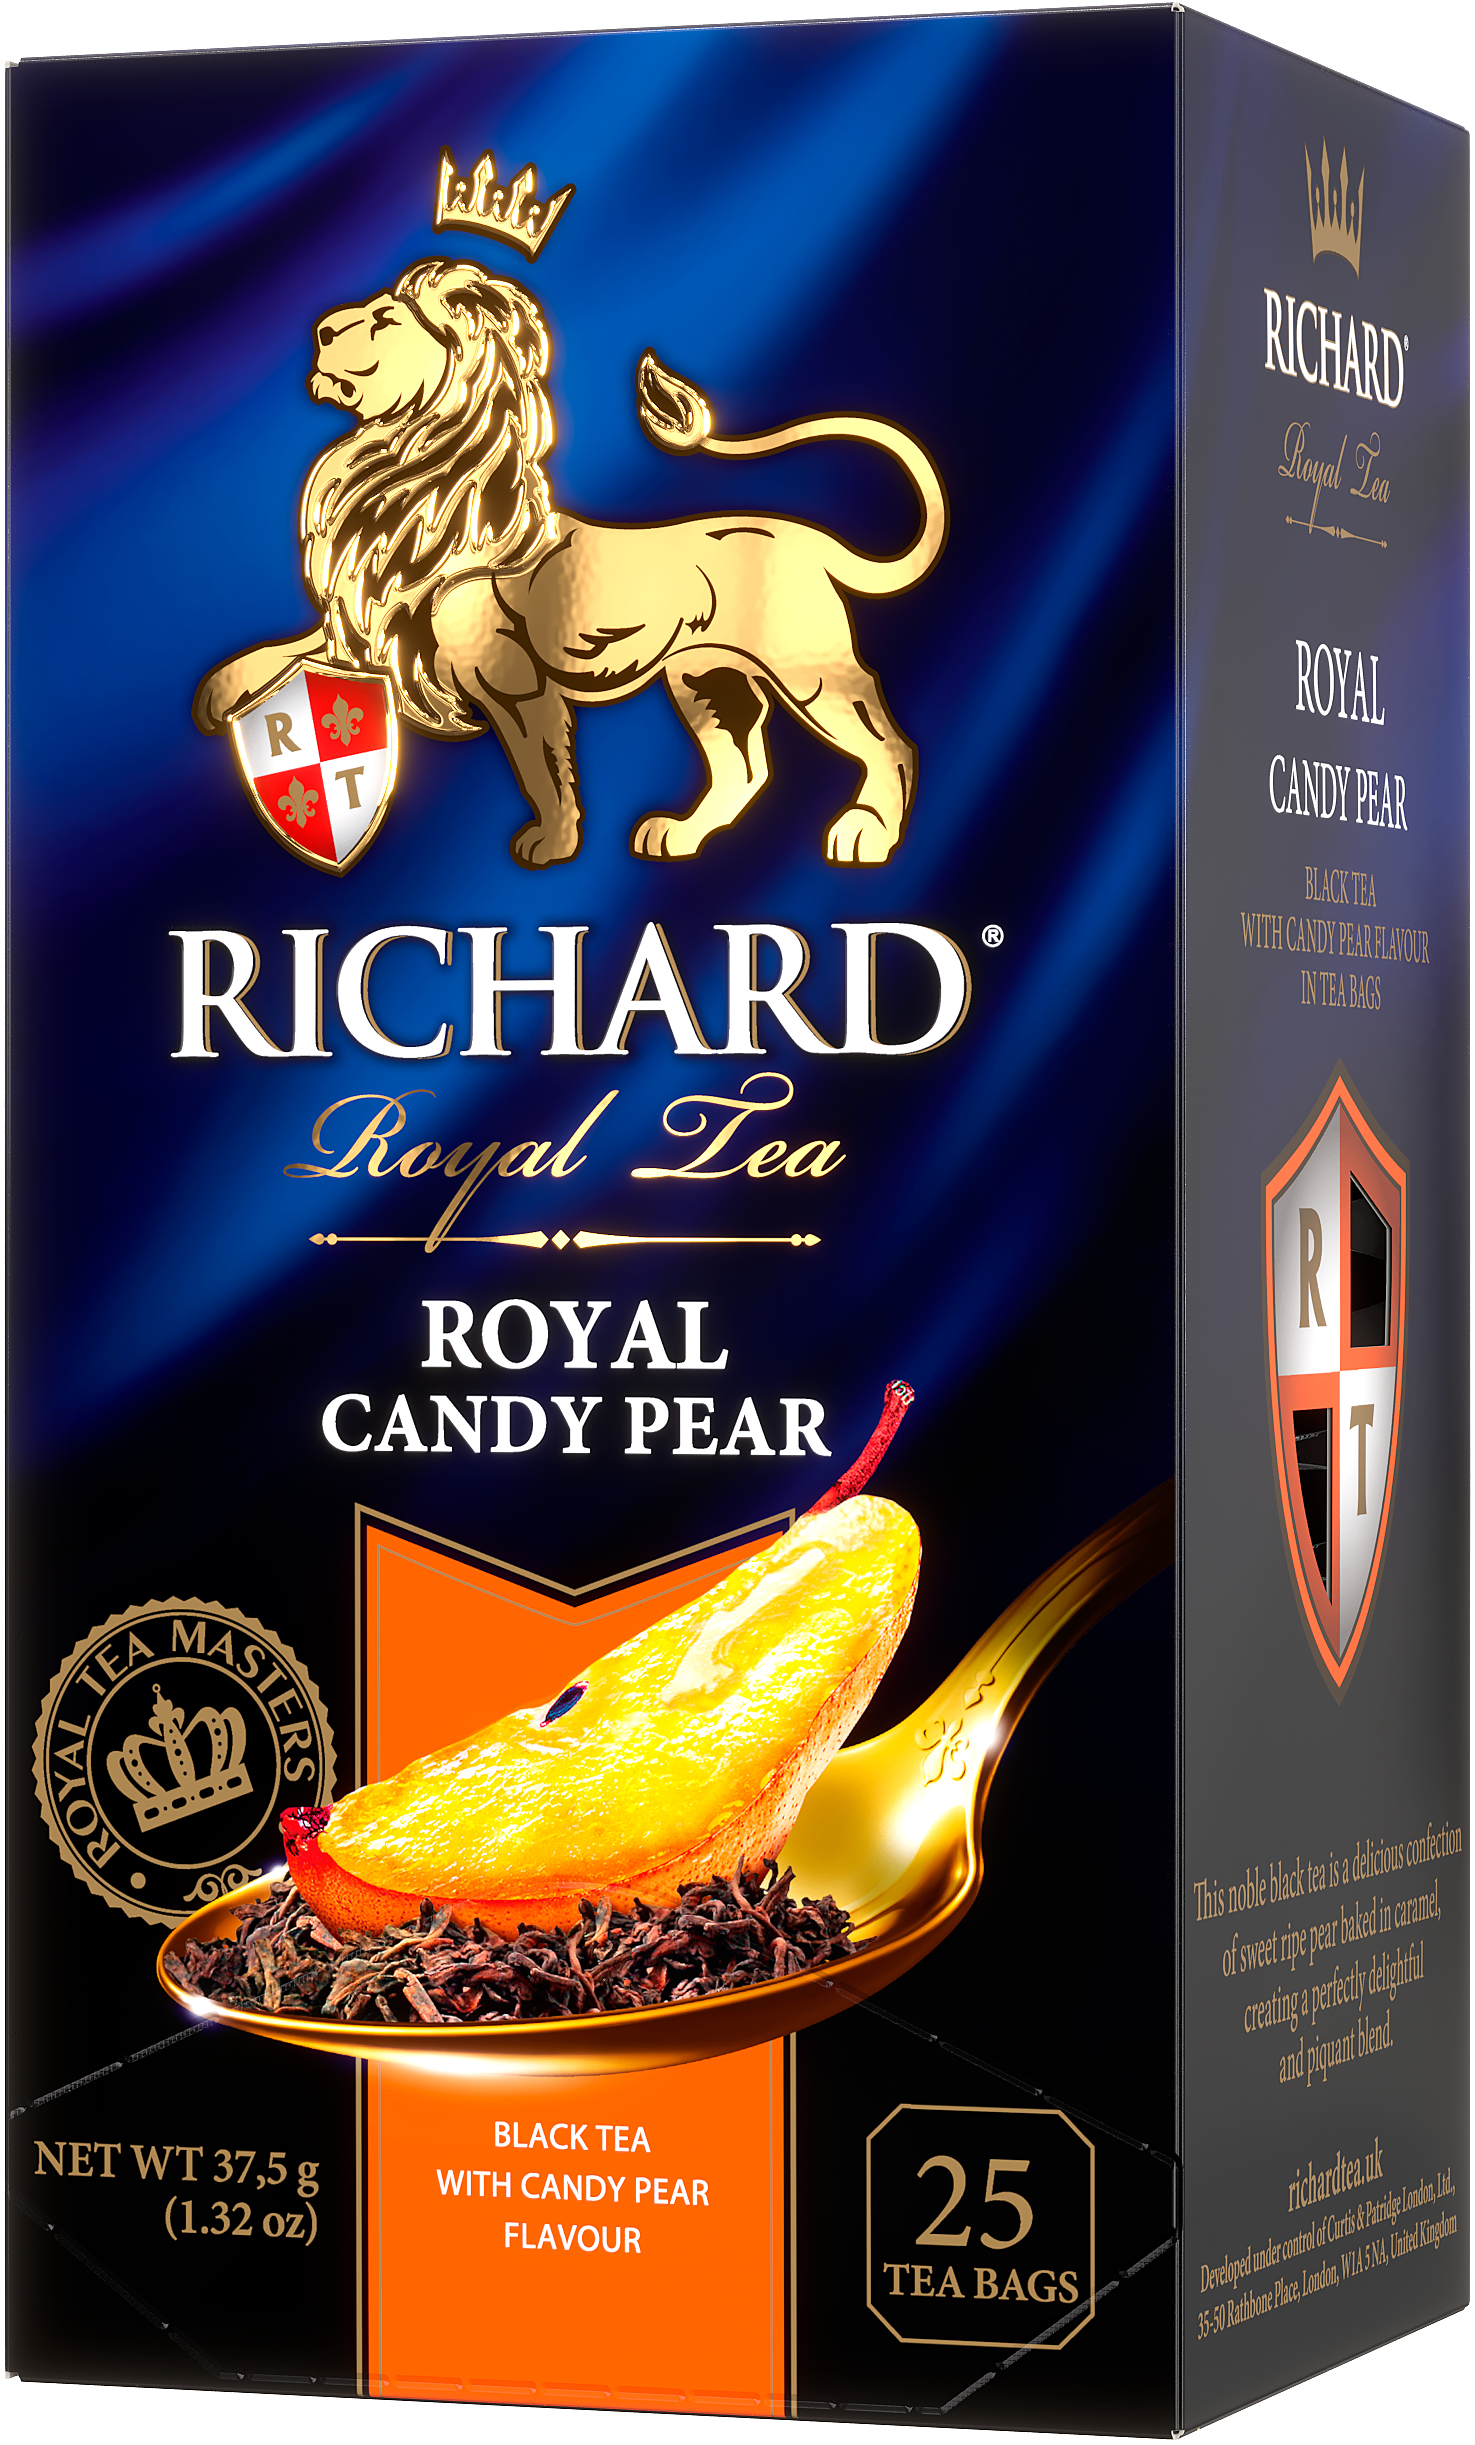 Richard Royal Candy Pear tea, black tea with caramelized pear flavor, 25 sachets, 37.5g